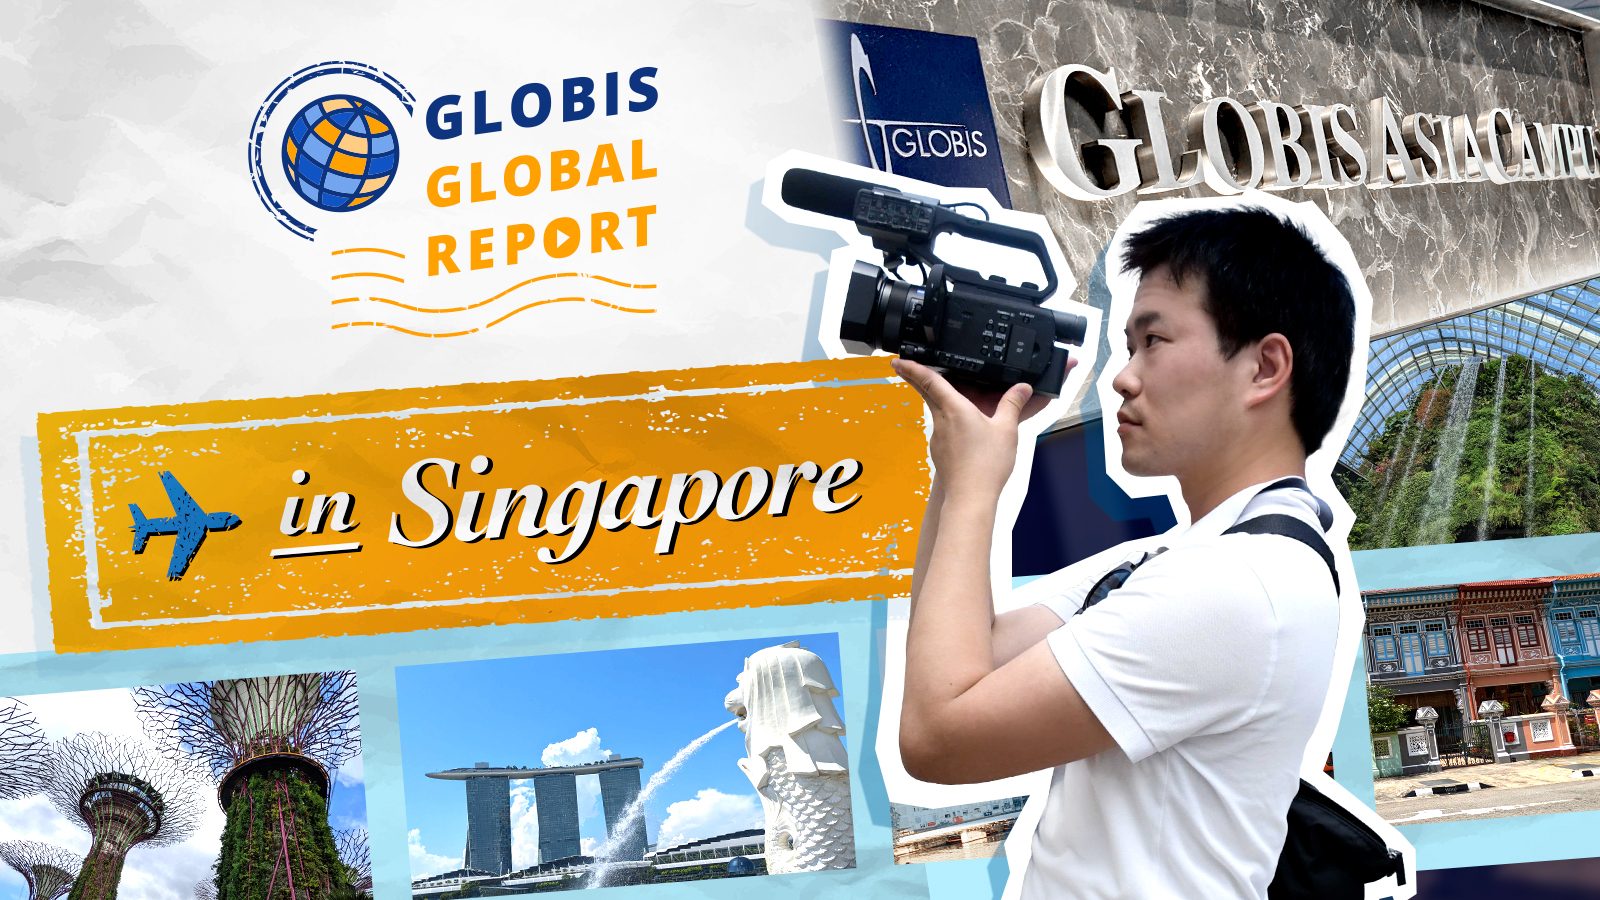 10周年を迎えたグロービス・アジア・キャンパスの存在価値と今後の展望【GLOBIS GLOBAL REPORT in Singapore】